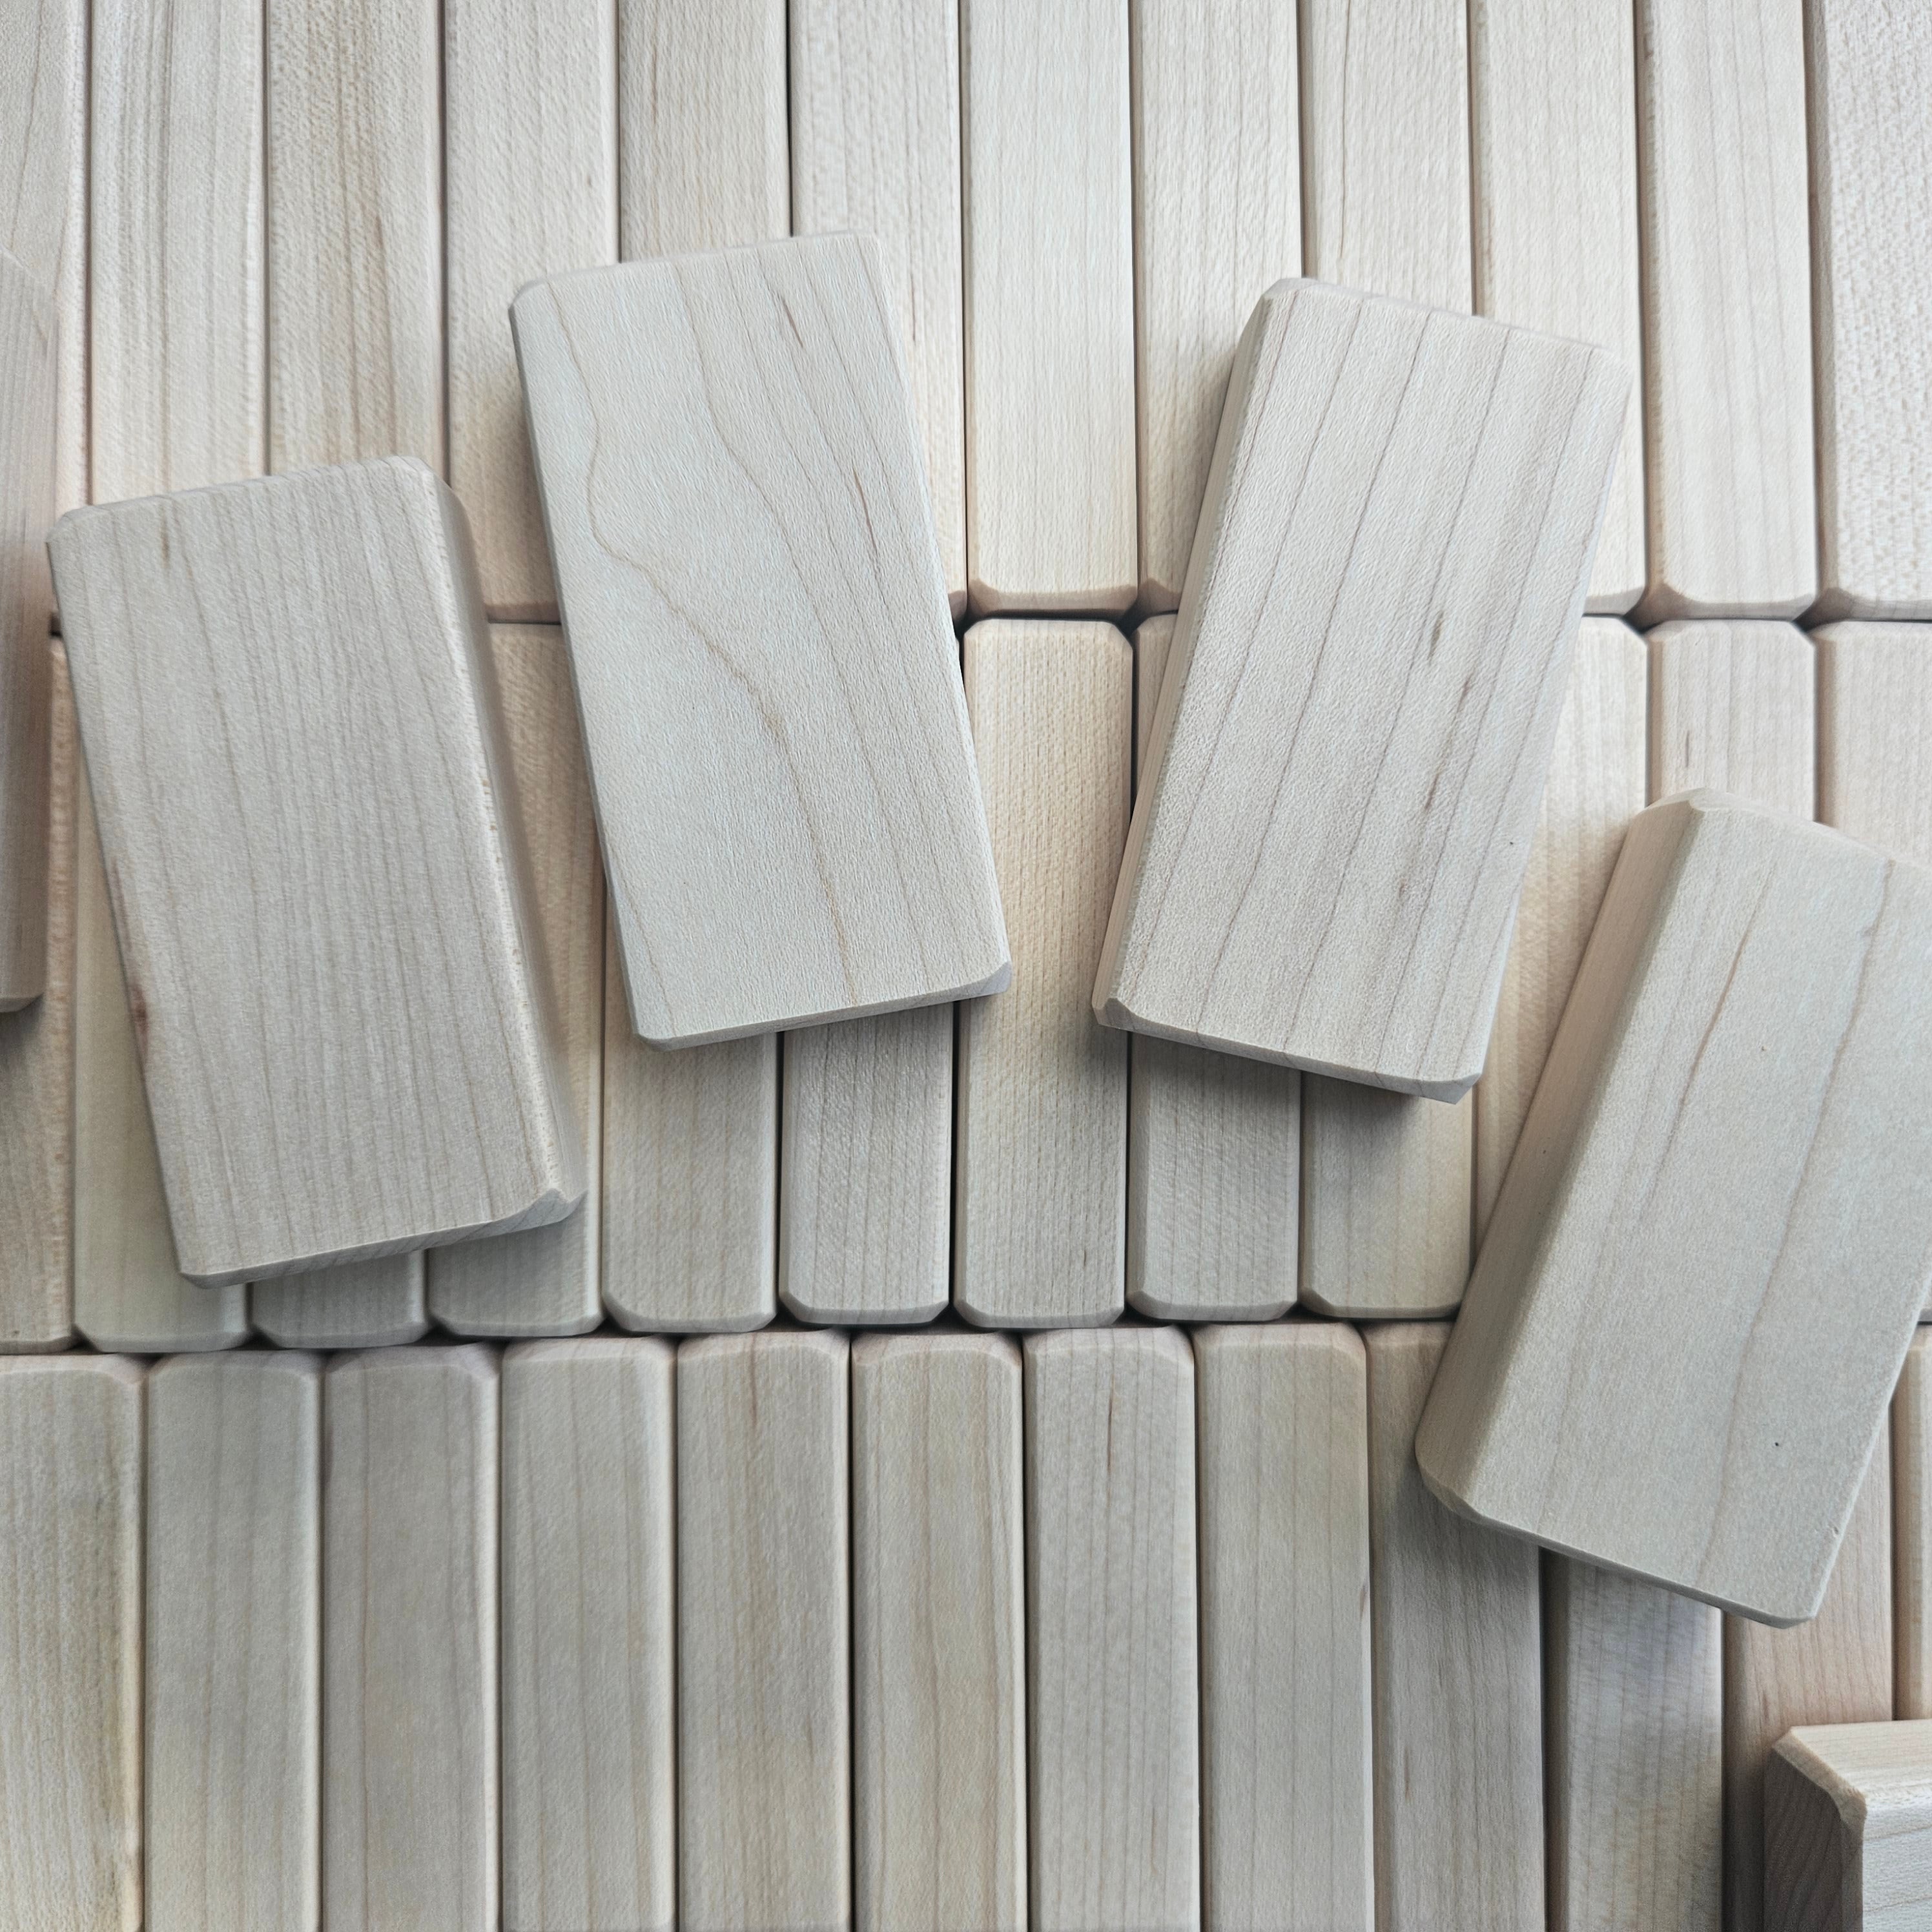 Premium Sanded Wood Blocks for decoupaging